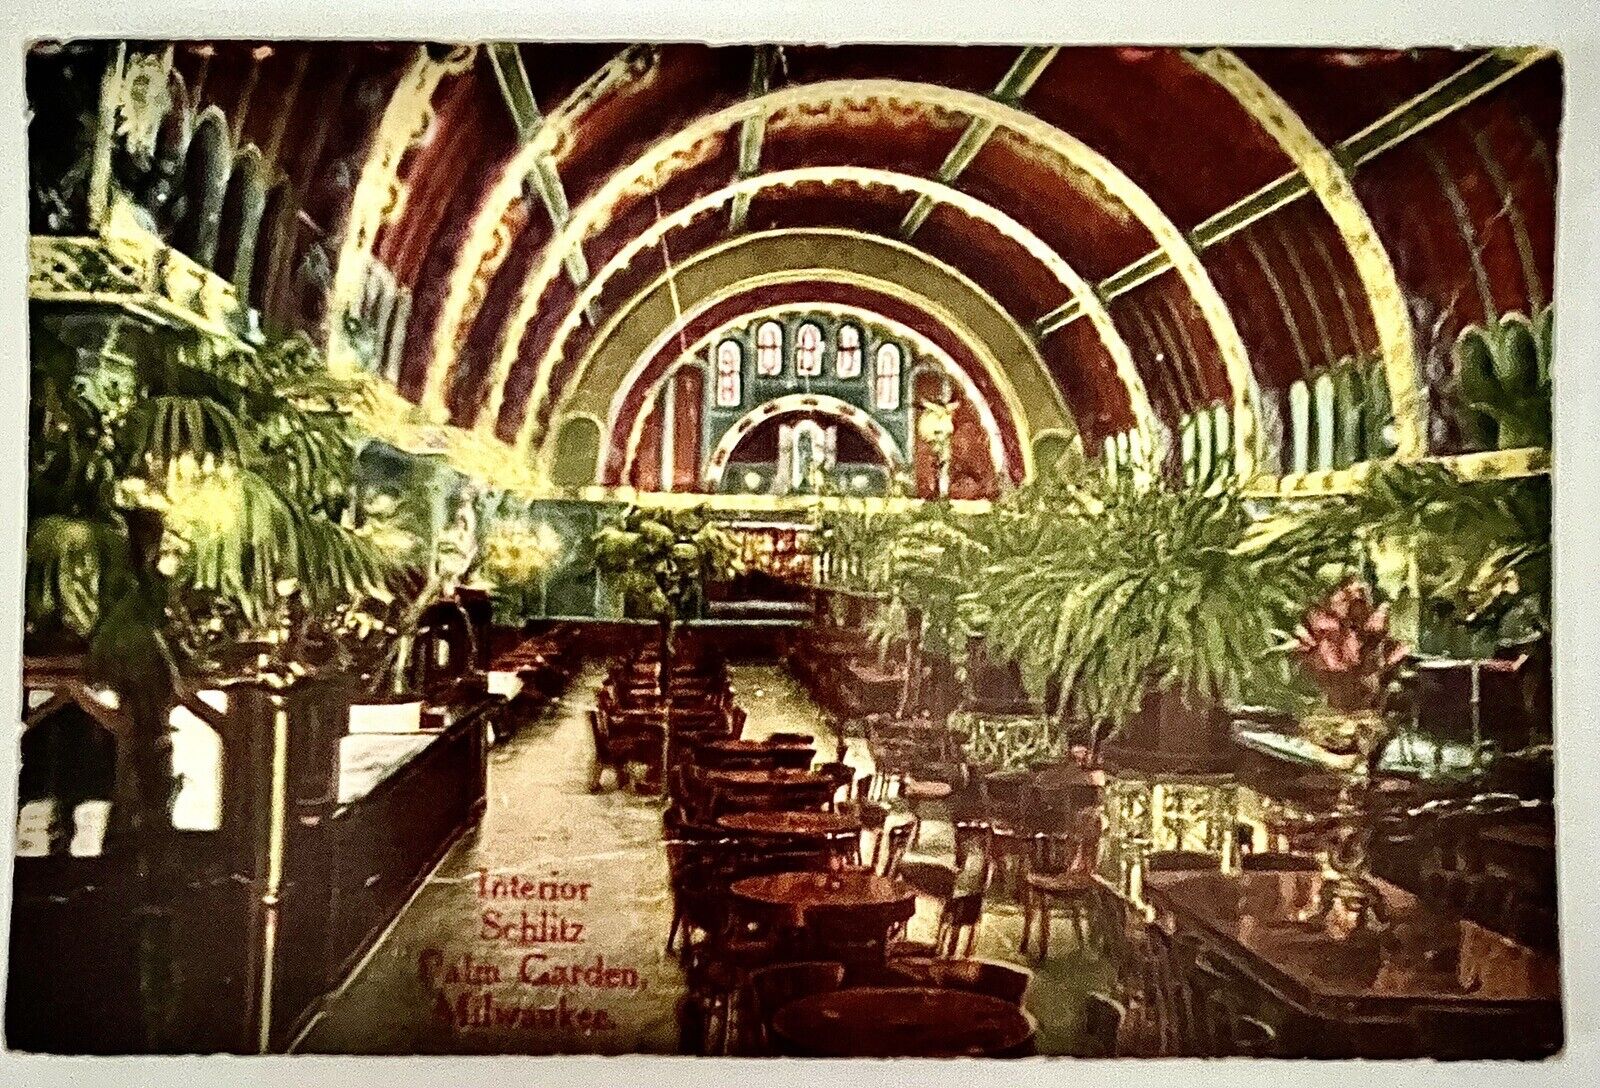 Milwaukee, WISCONSIN Interior SCHLITZ Palm GARDEN Antique 1915 Postcard